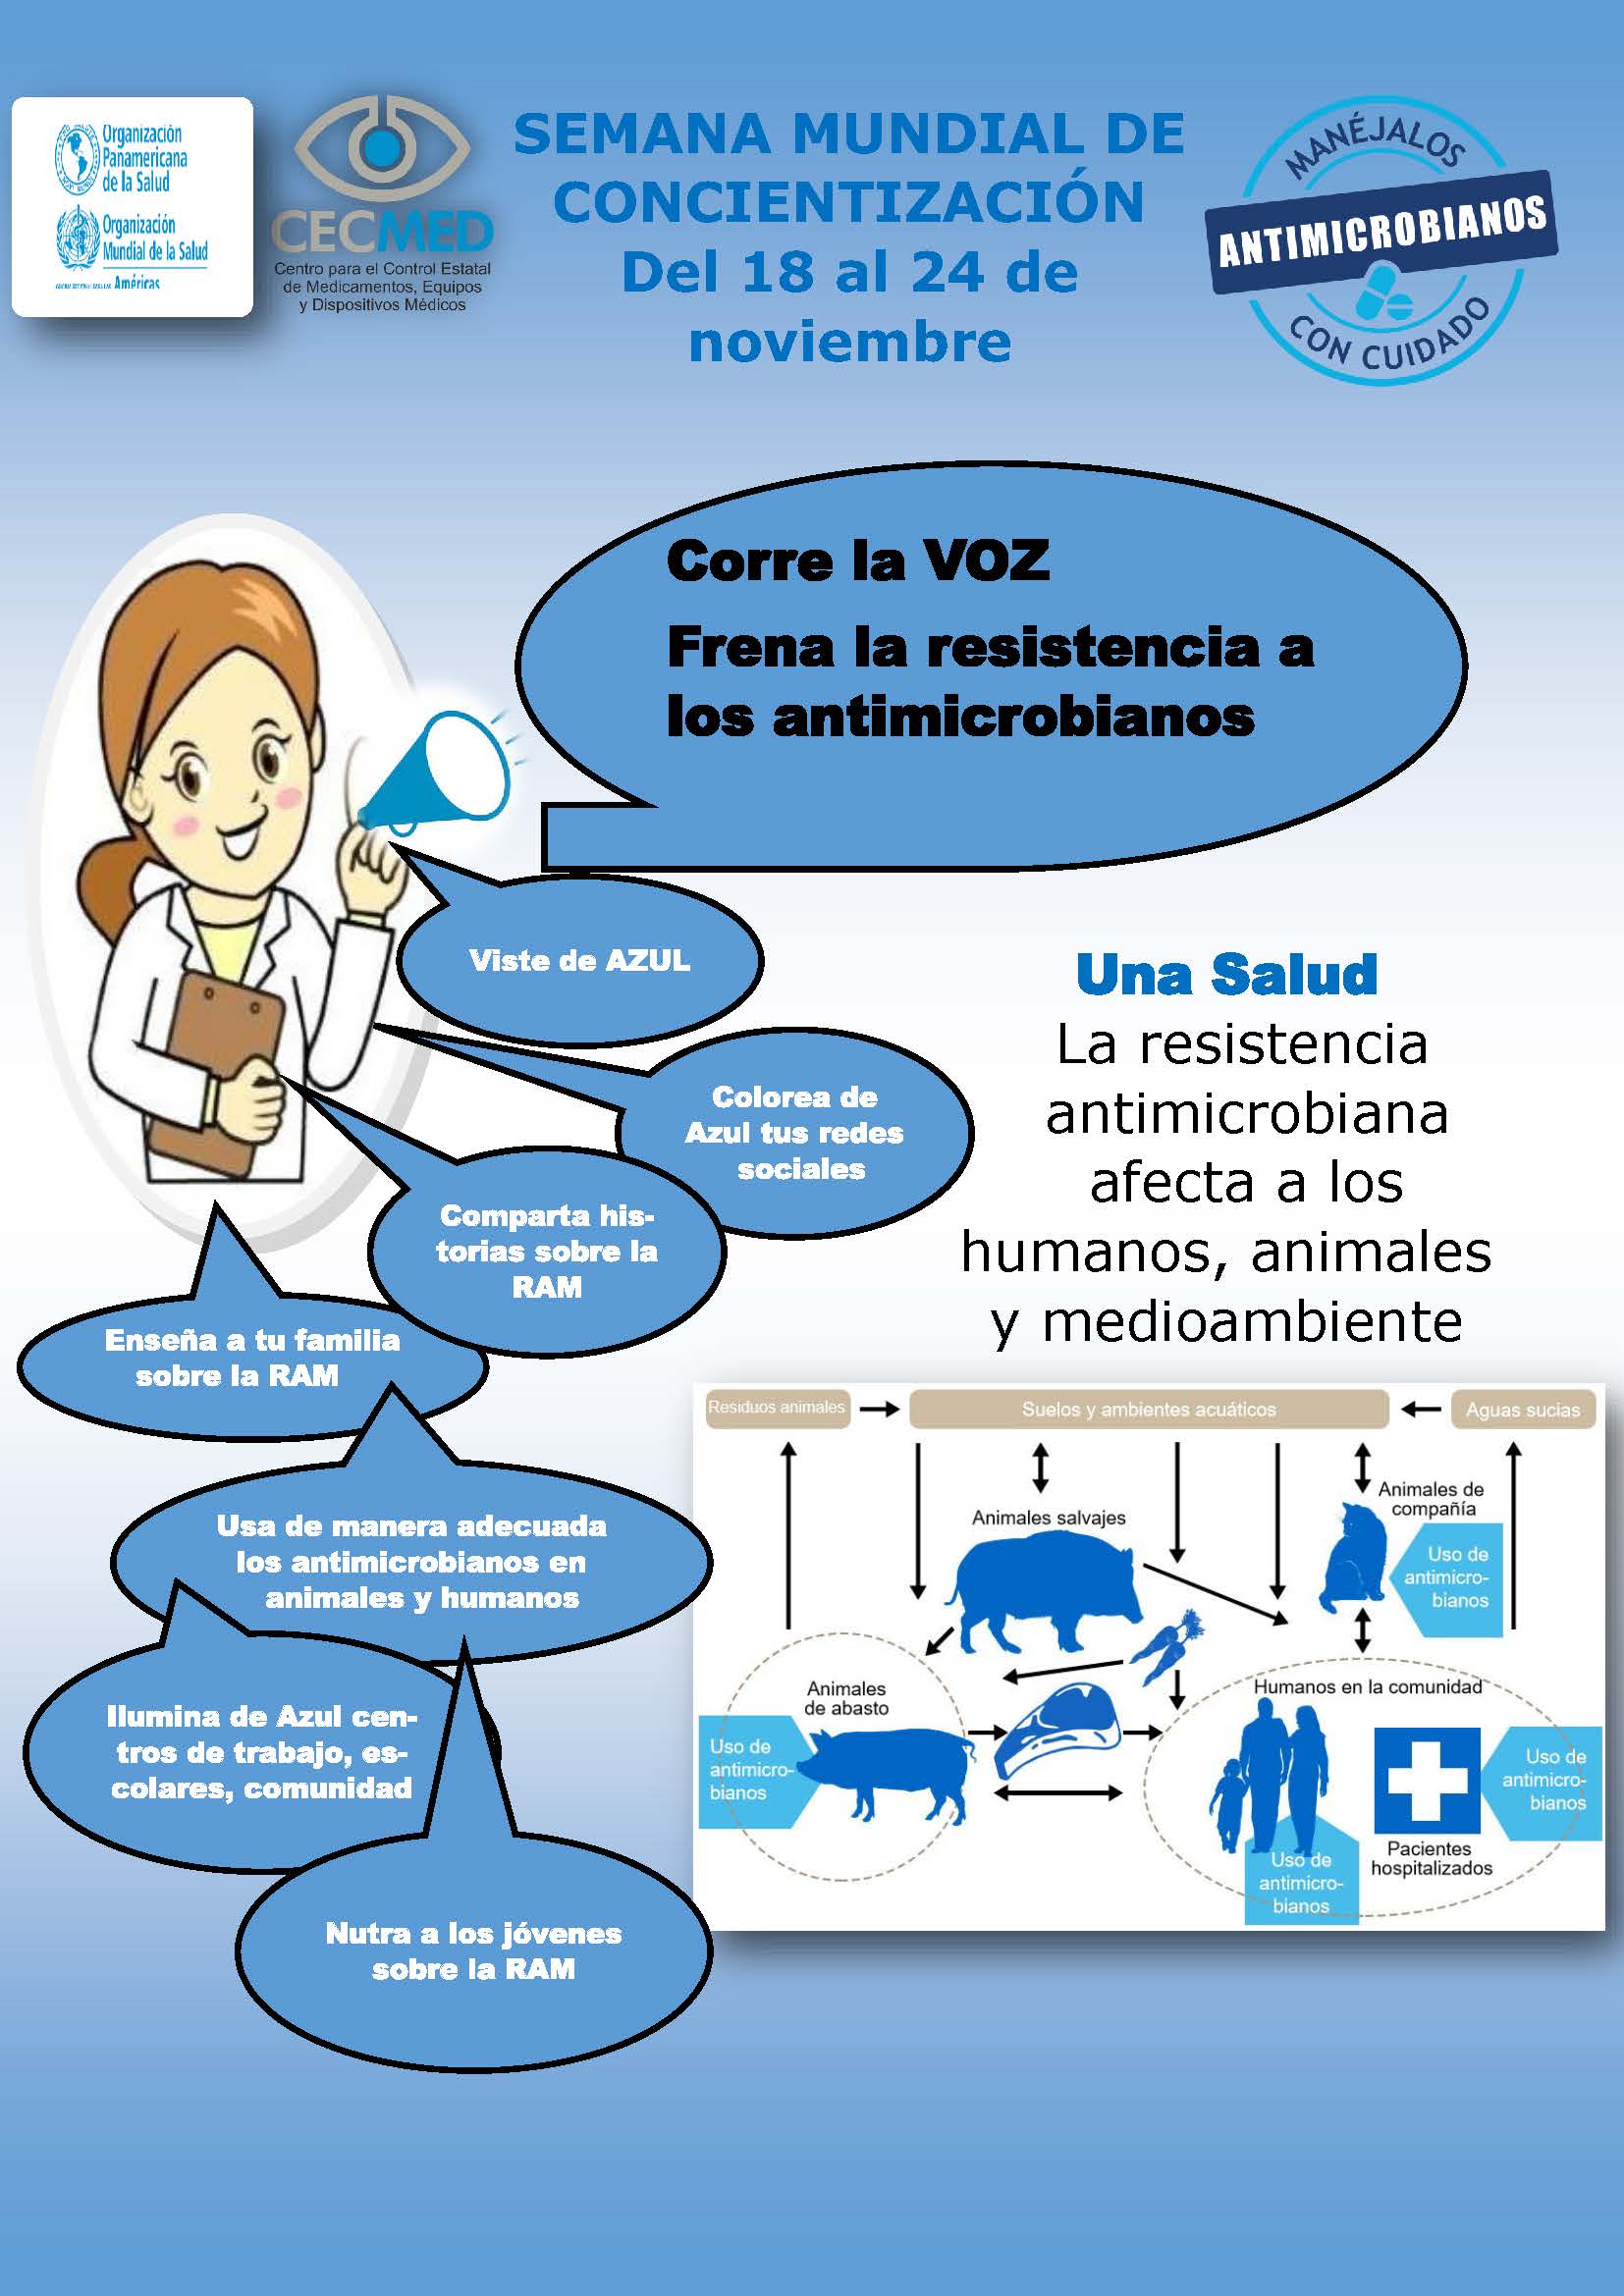 Semana Mundial de Concientización sobre el uso de los antimicrobianos 2021